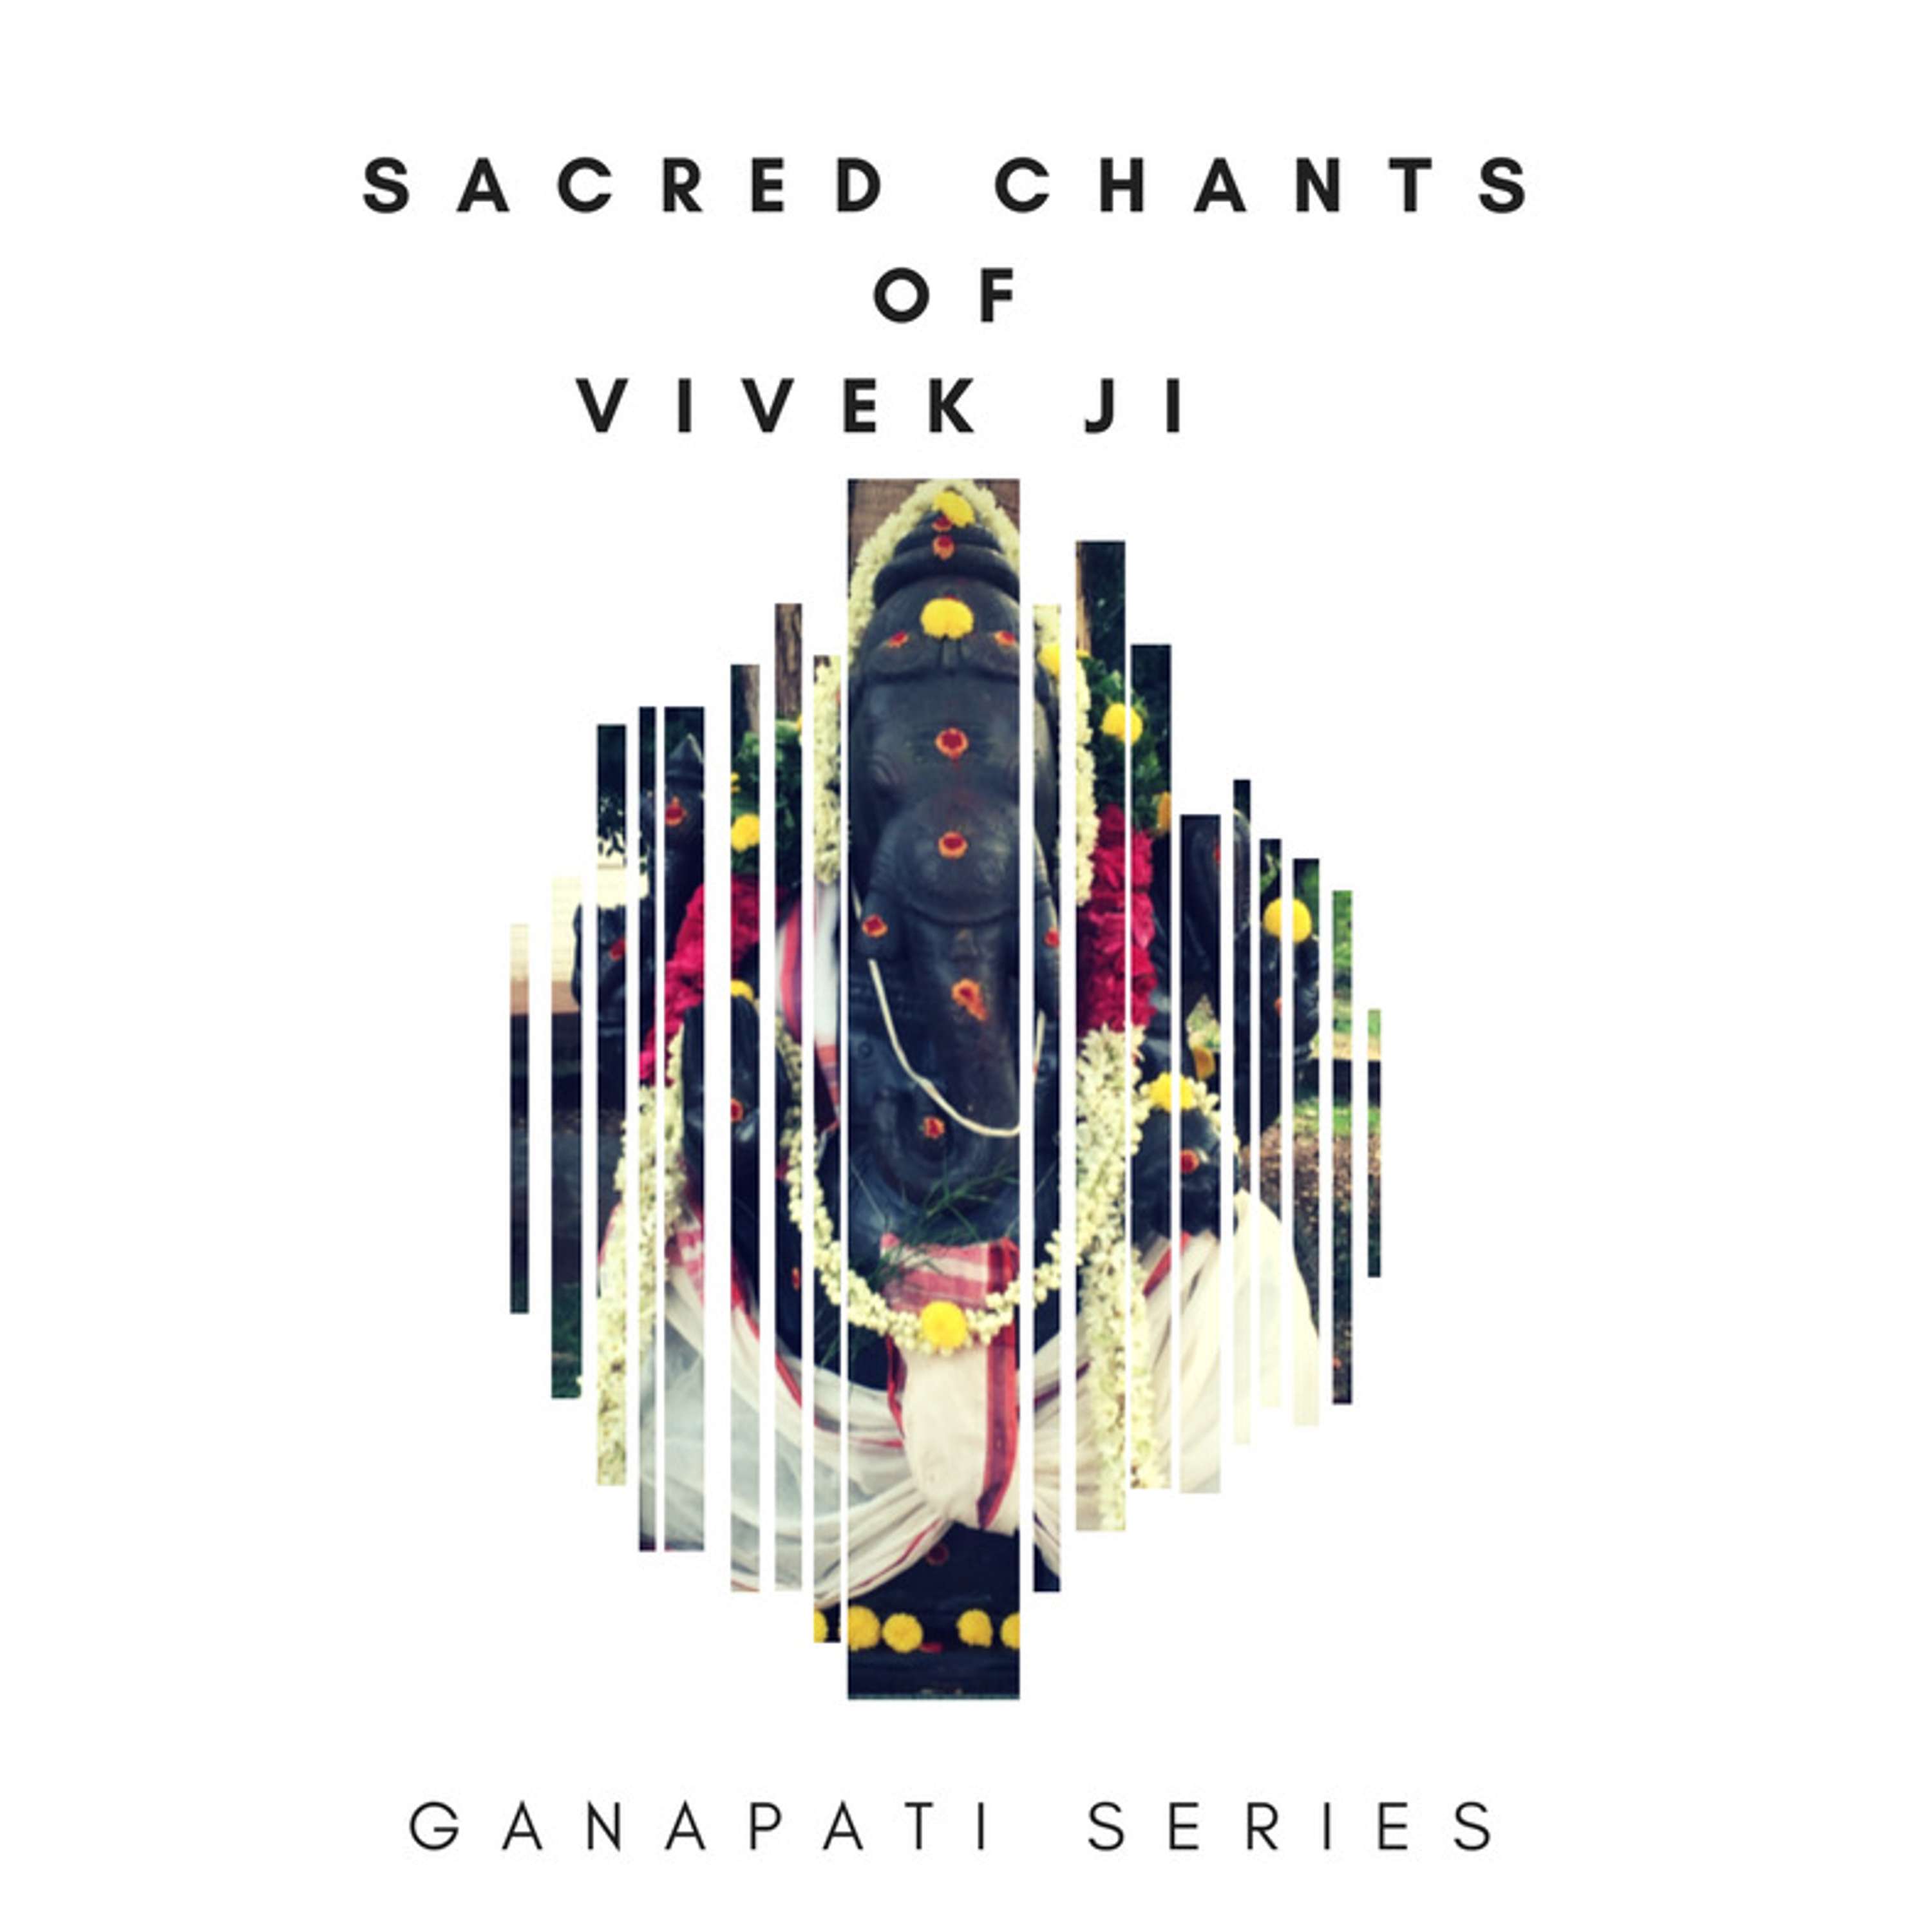 Sacred Chants - Musik vahan modak hasta